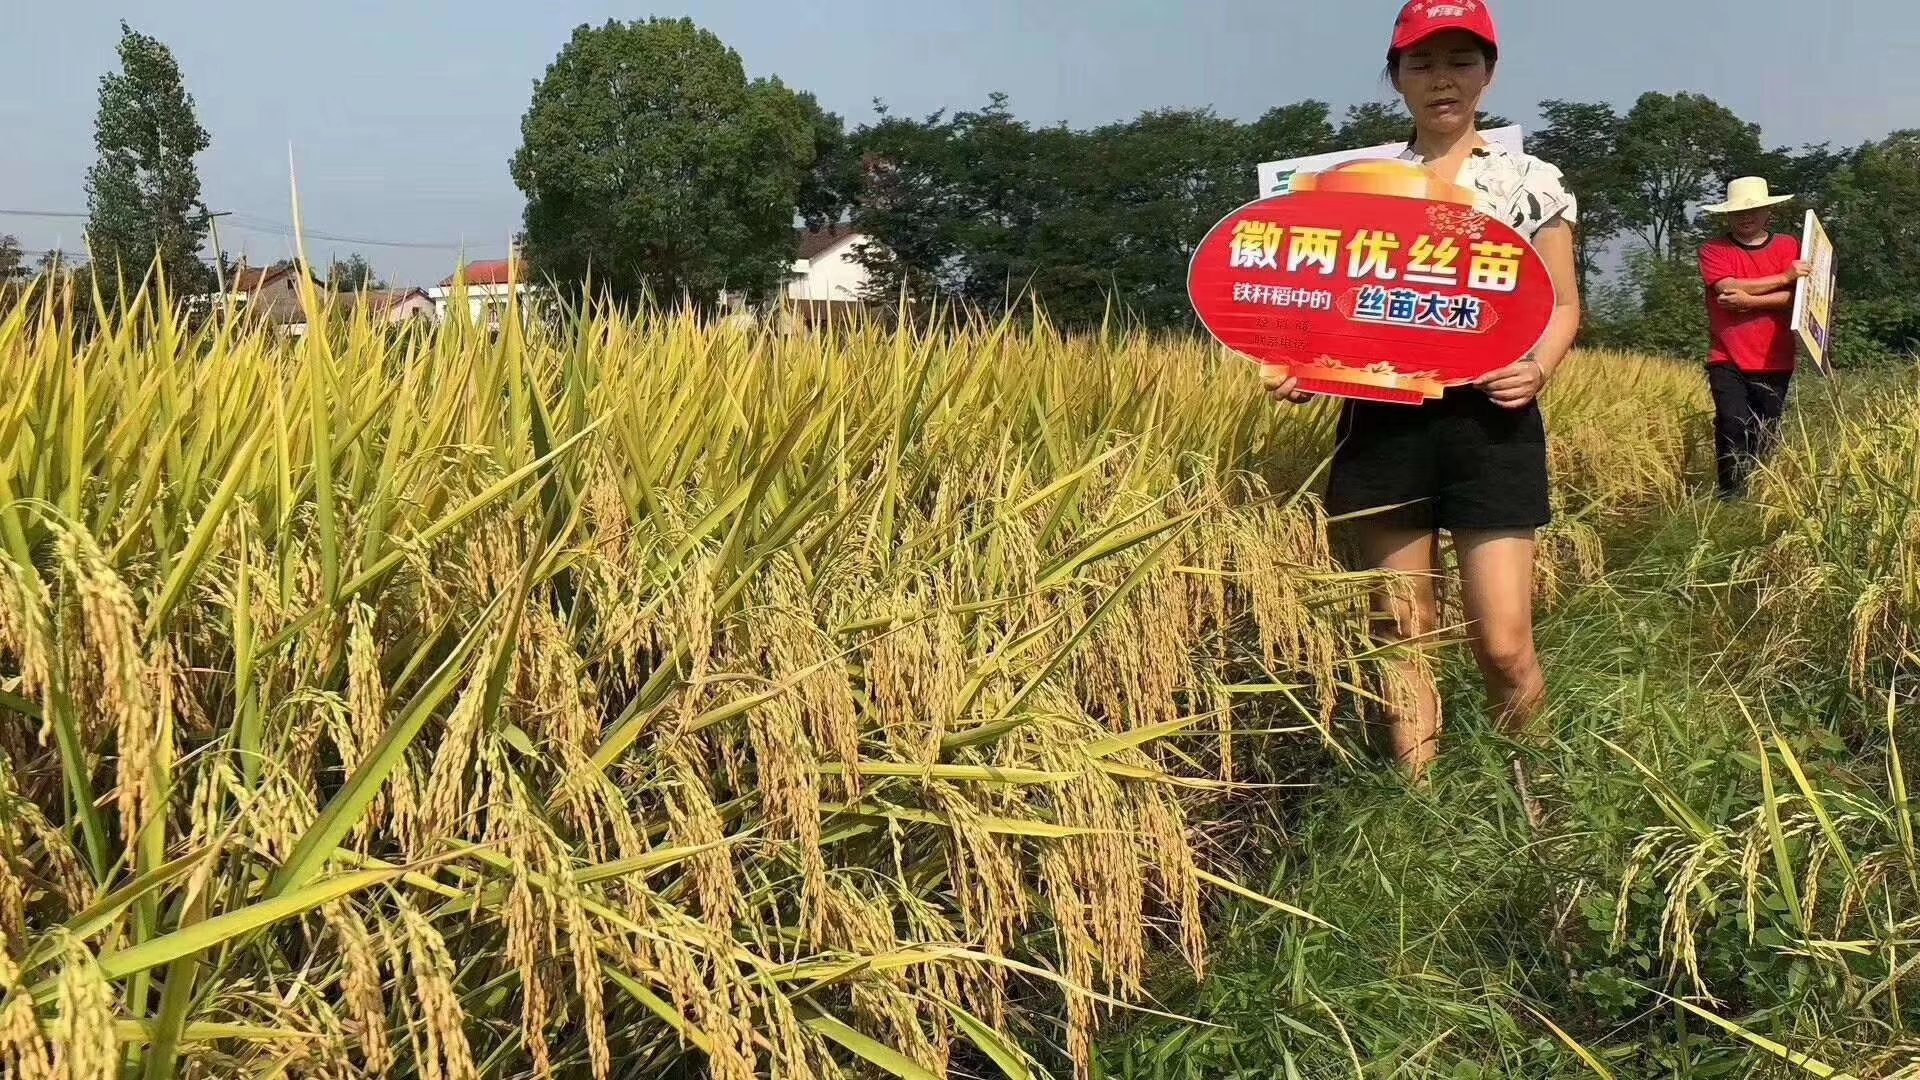 水稻,2017年6月29日经第三届国家农作物品种审定委员会第九次会议审定